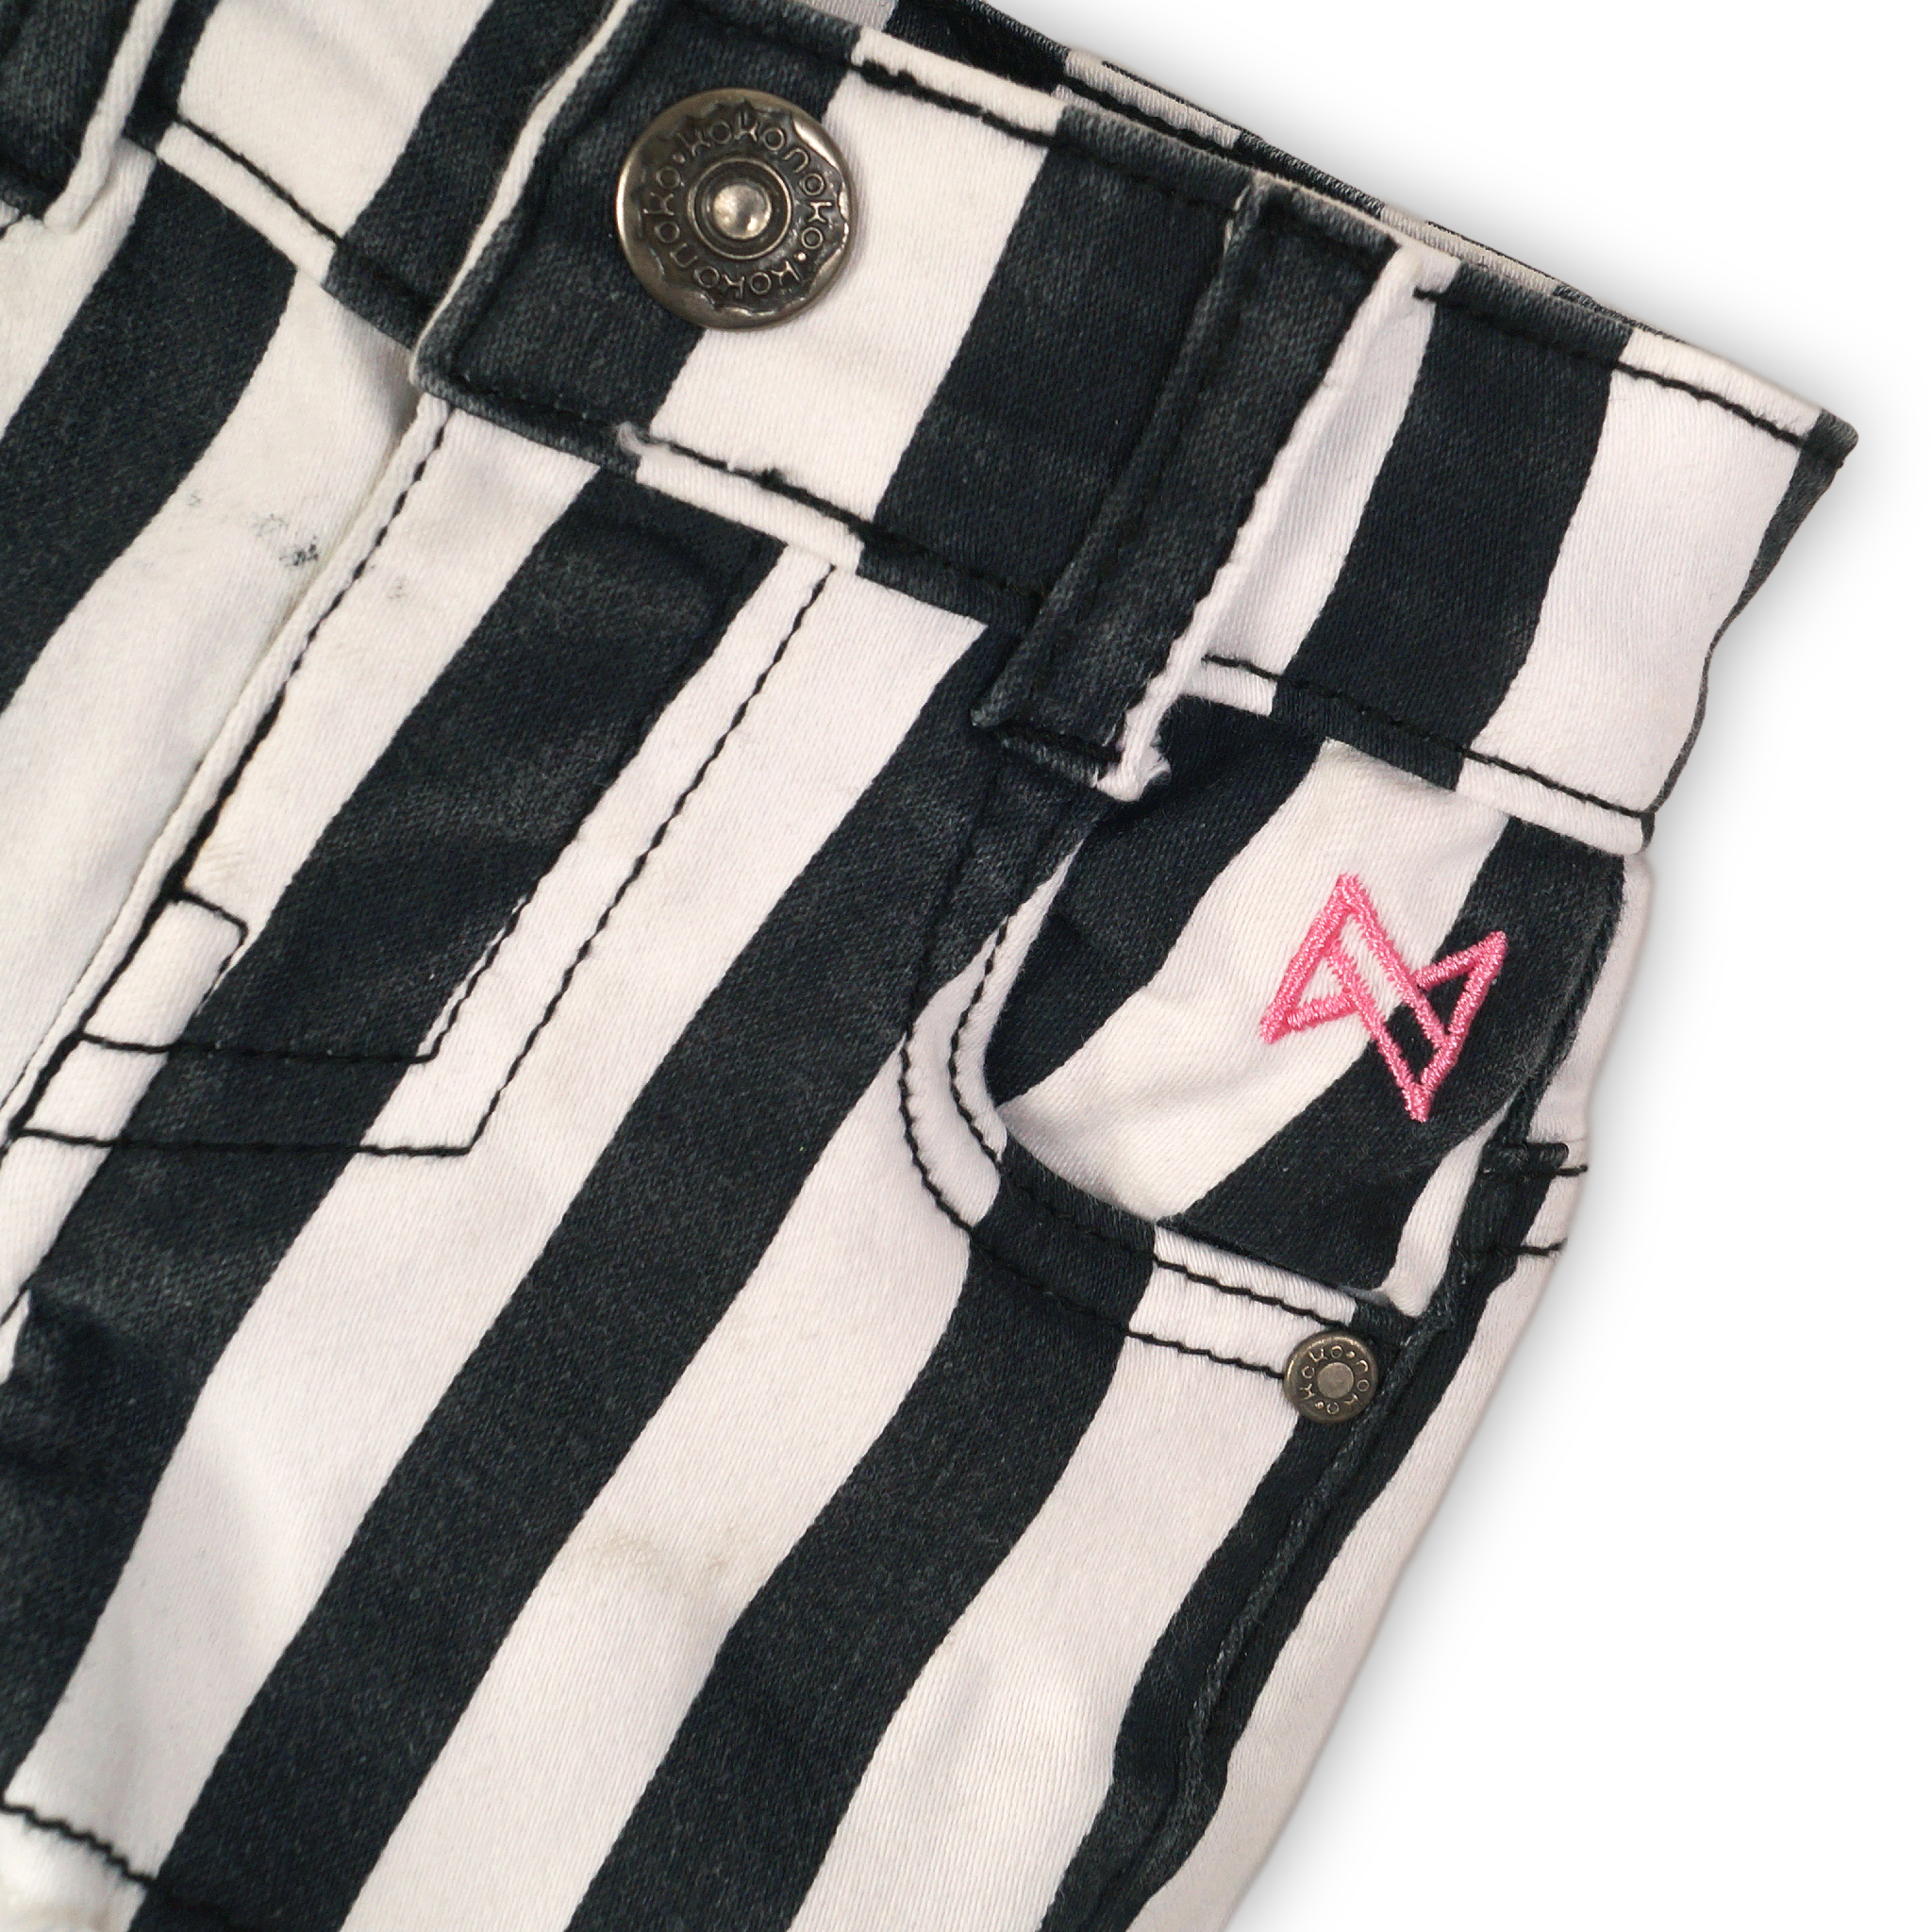 Baby Jongens Baby shorts van Koko Noko in de kleur Stripes + black + white in maat 86.